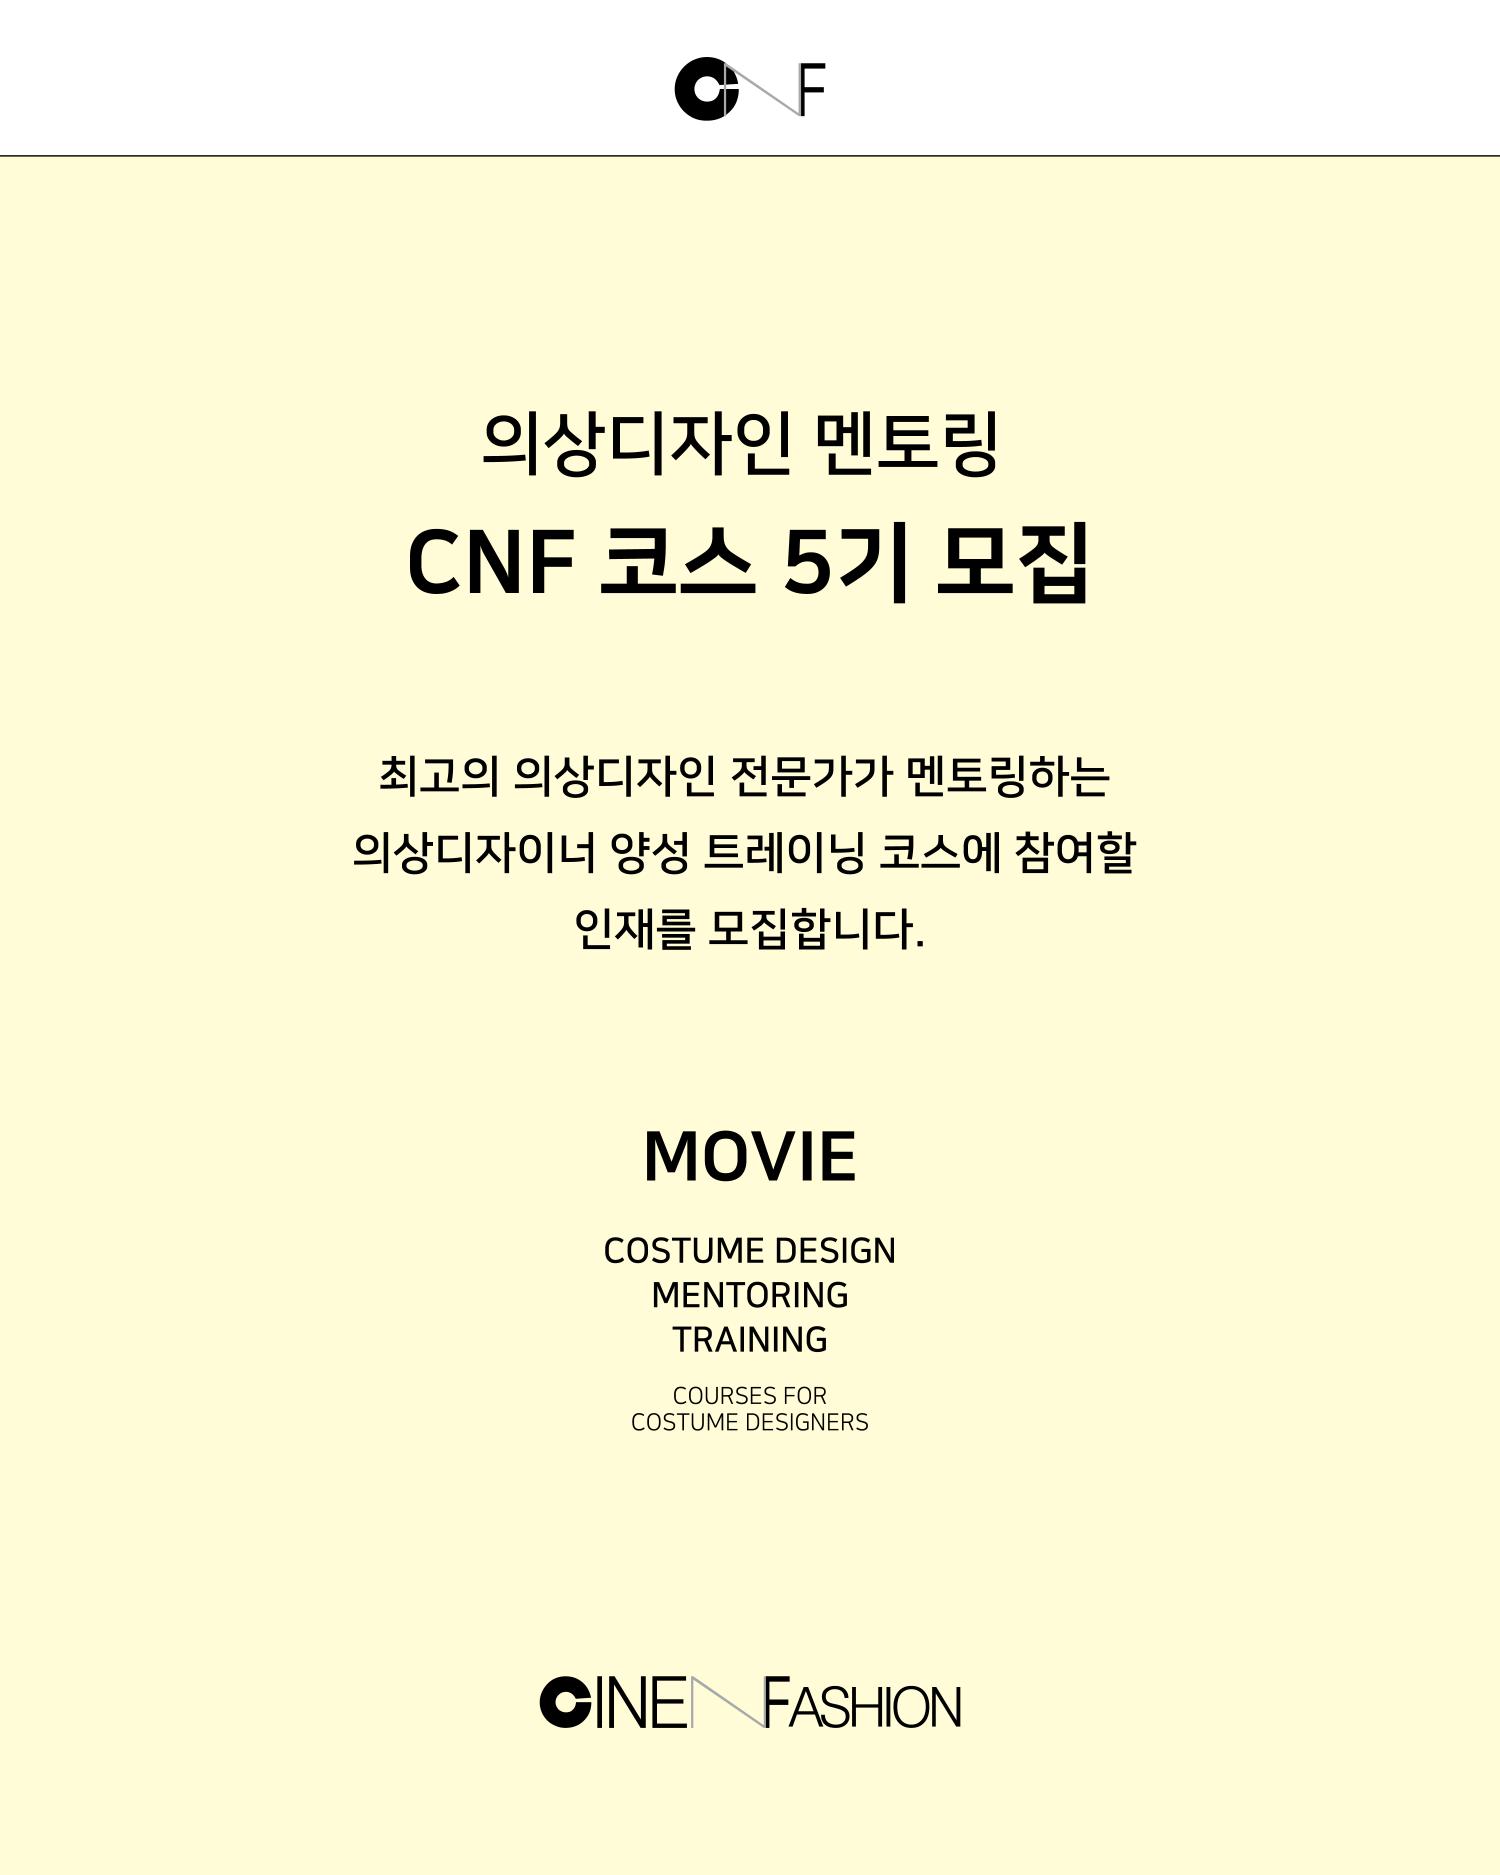 CNF코스모집공고_5기(1쪽).jpg